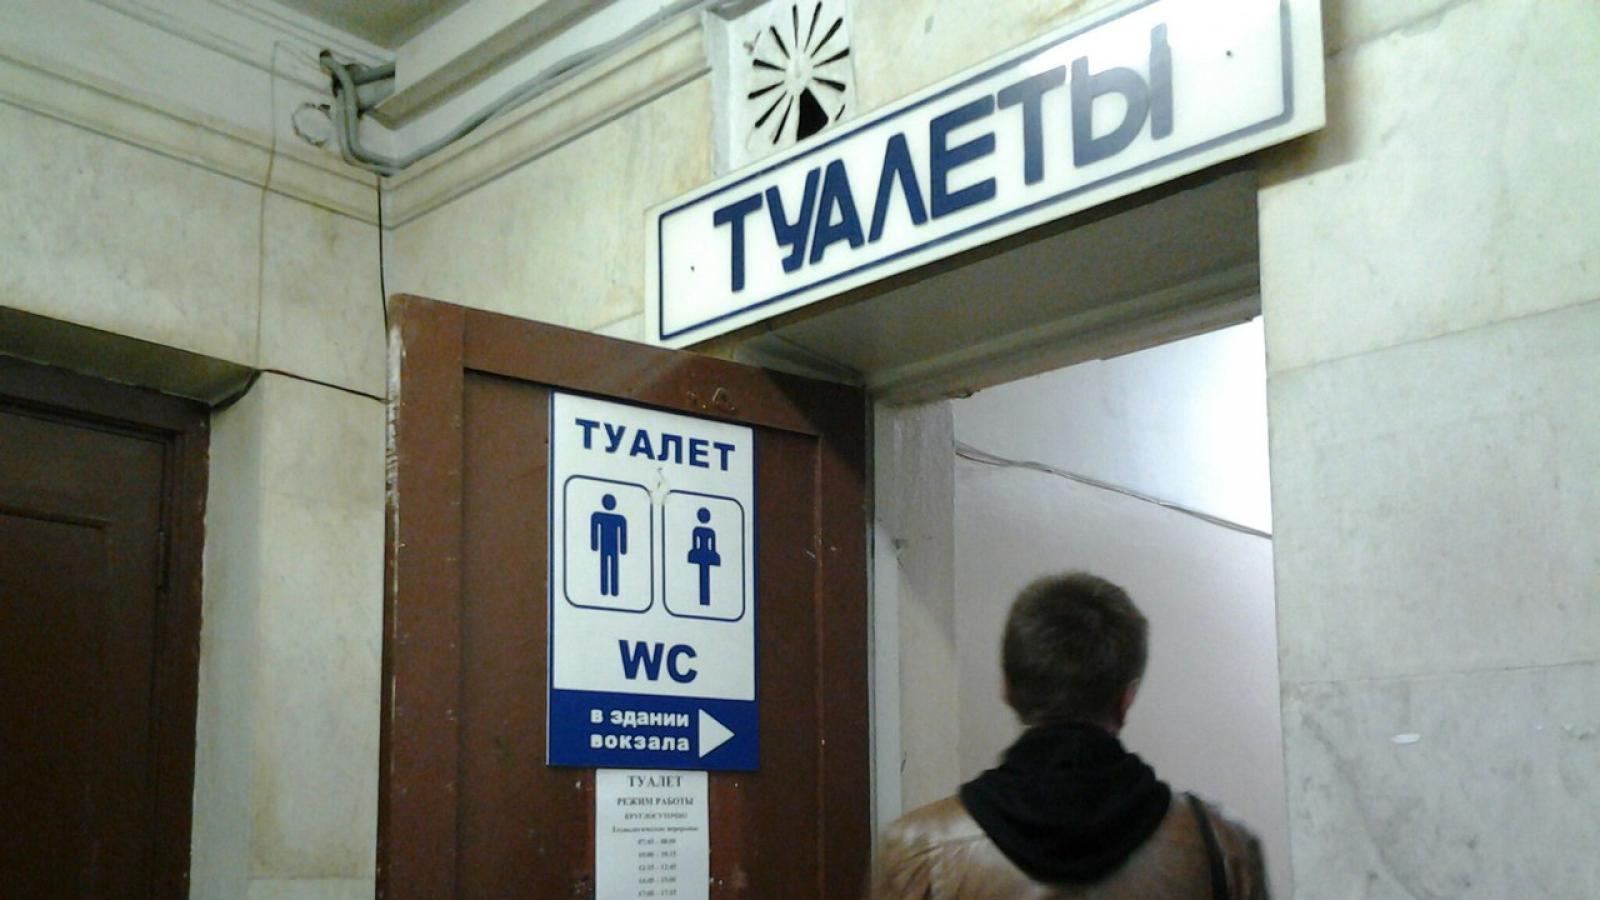 Где туалет где туалет песню. Туалет вокзал. Платный туалет на вокзале. Туалет на Курском вокзале. Сортир на вокзале.